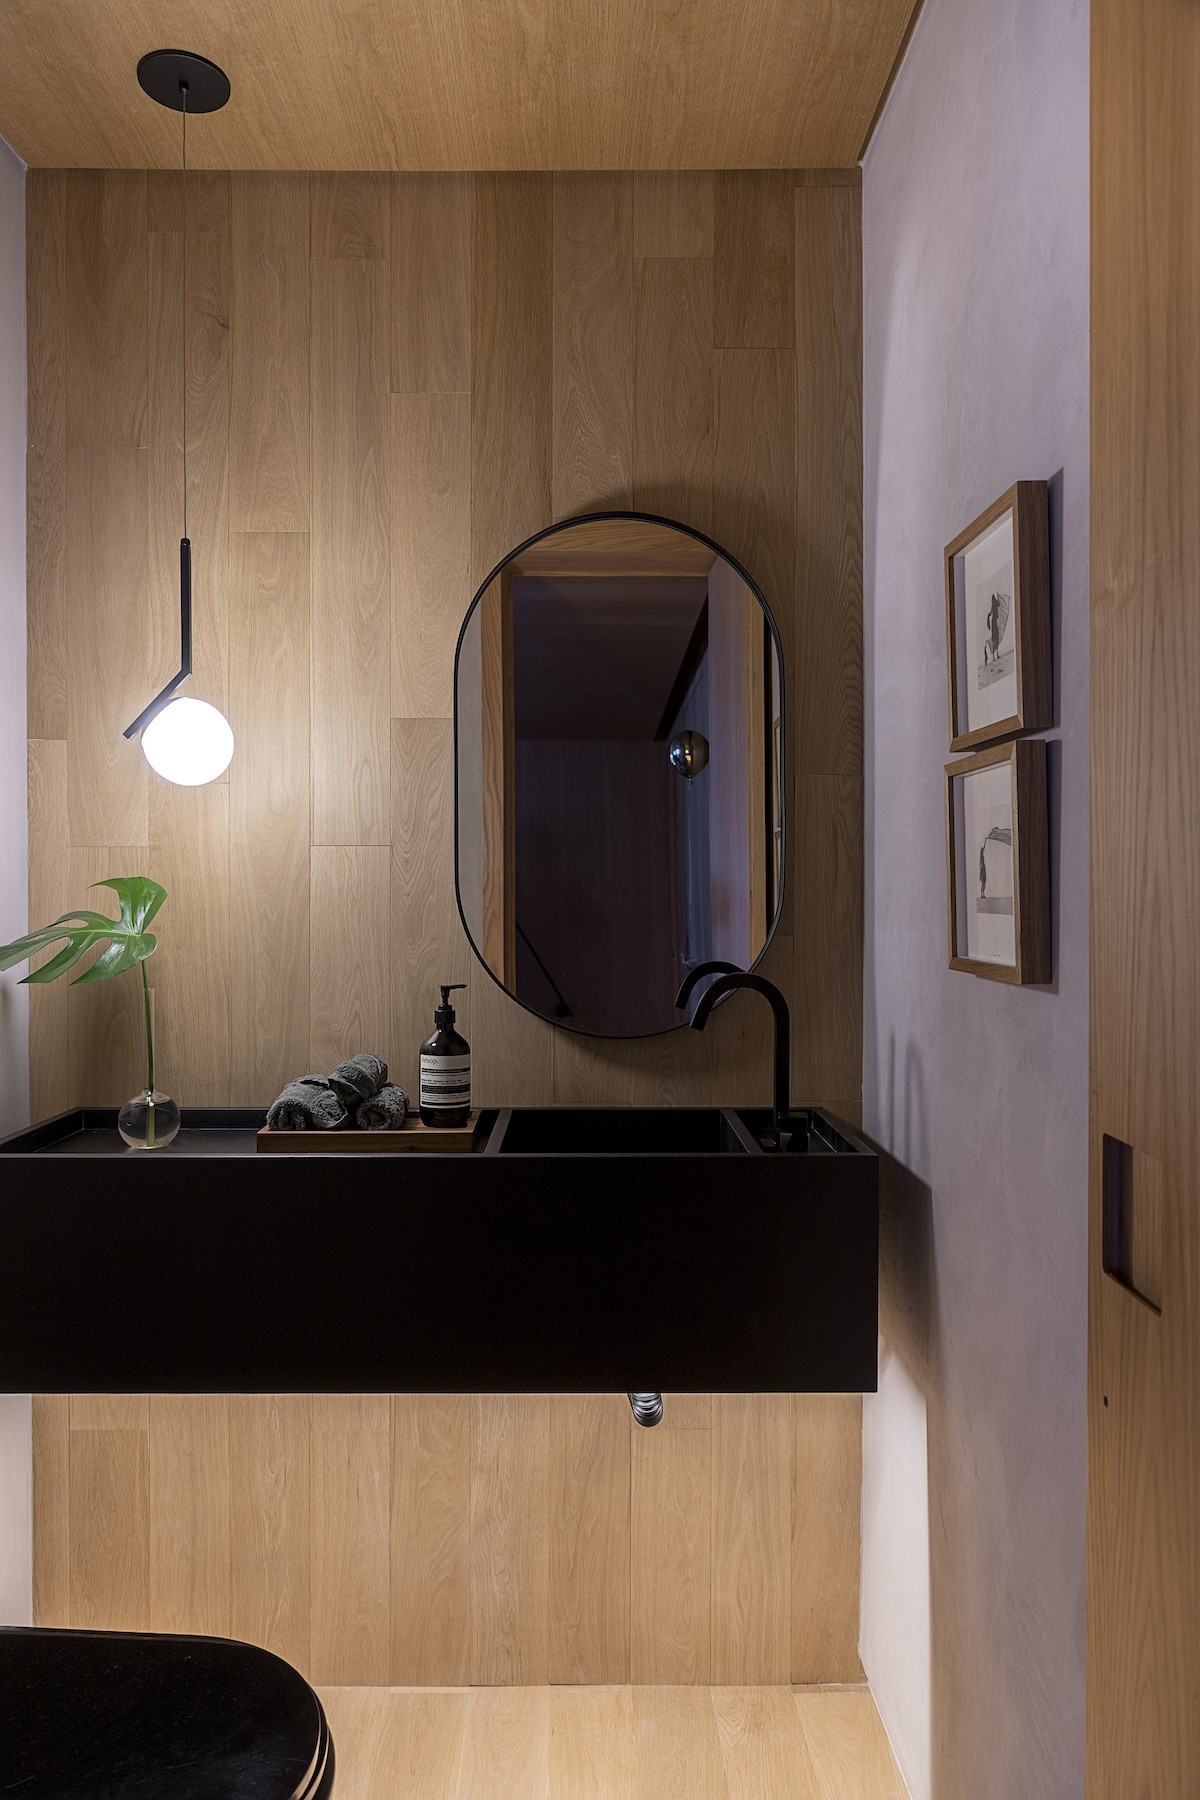 BANHEIRO | A decoração do banheiro traz um tom mais escuro combinado com a madeira (Foto: Divulgação / Rafael Renzo)